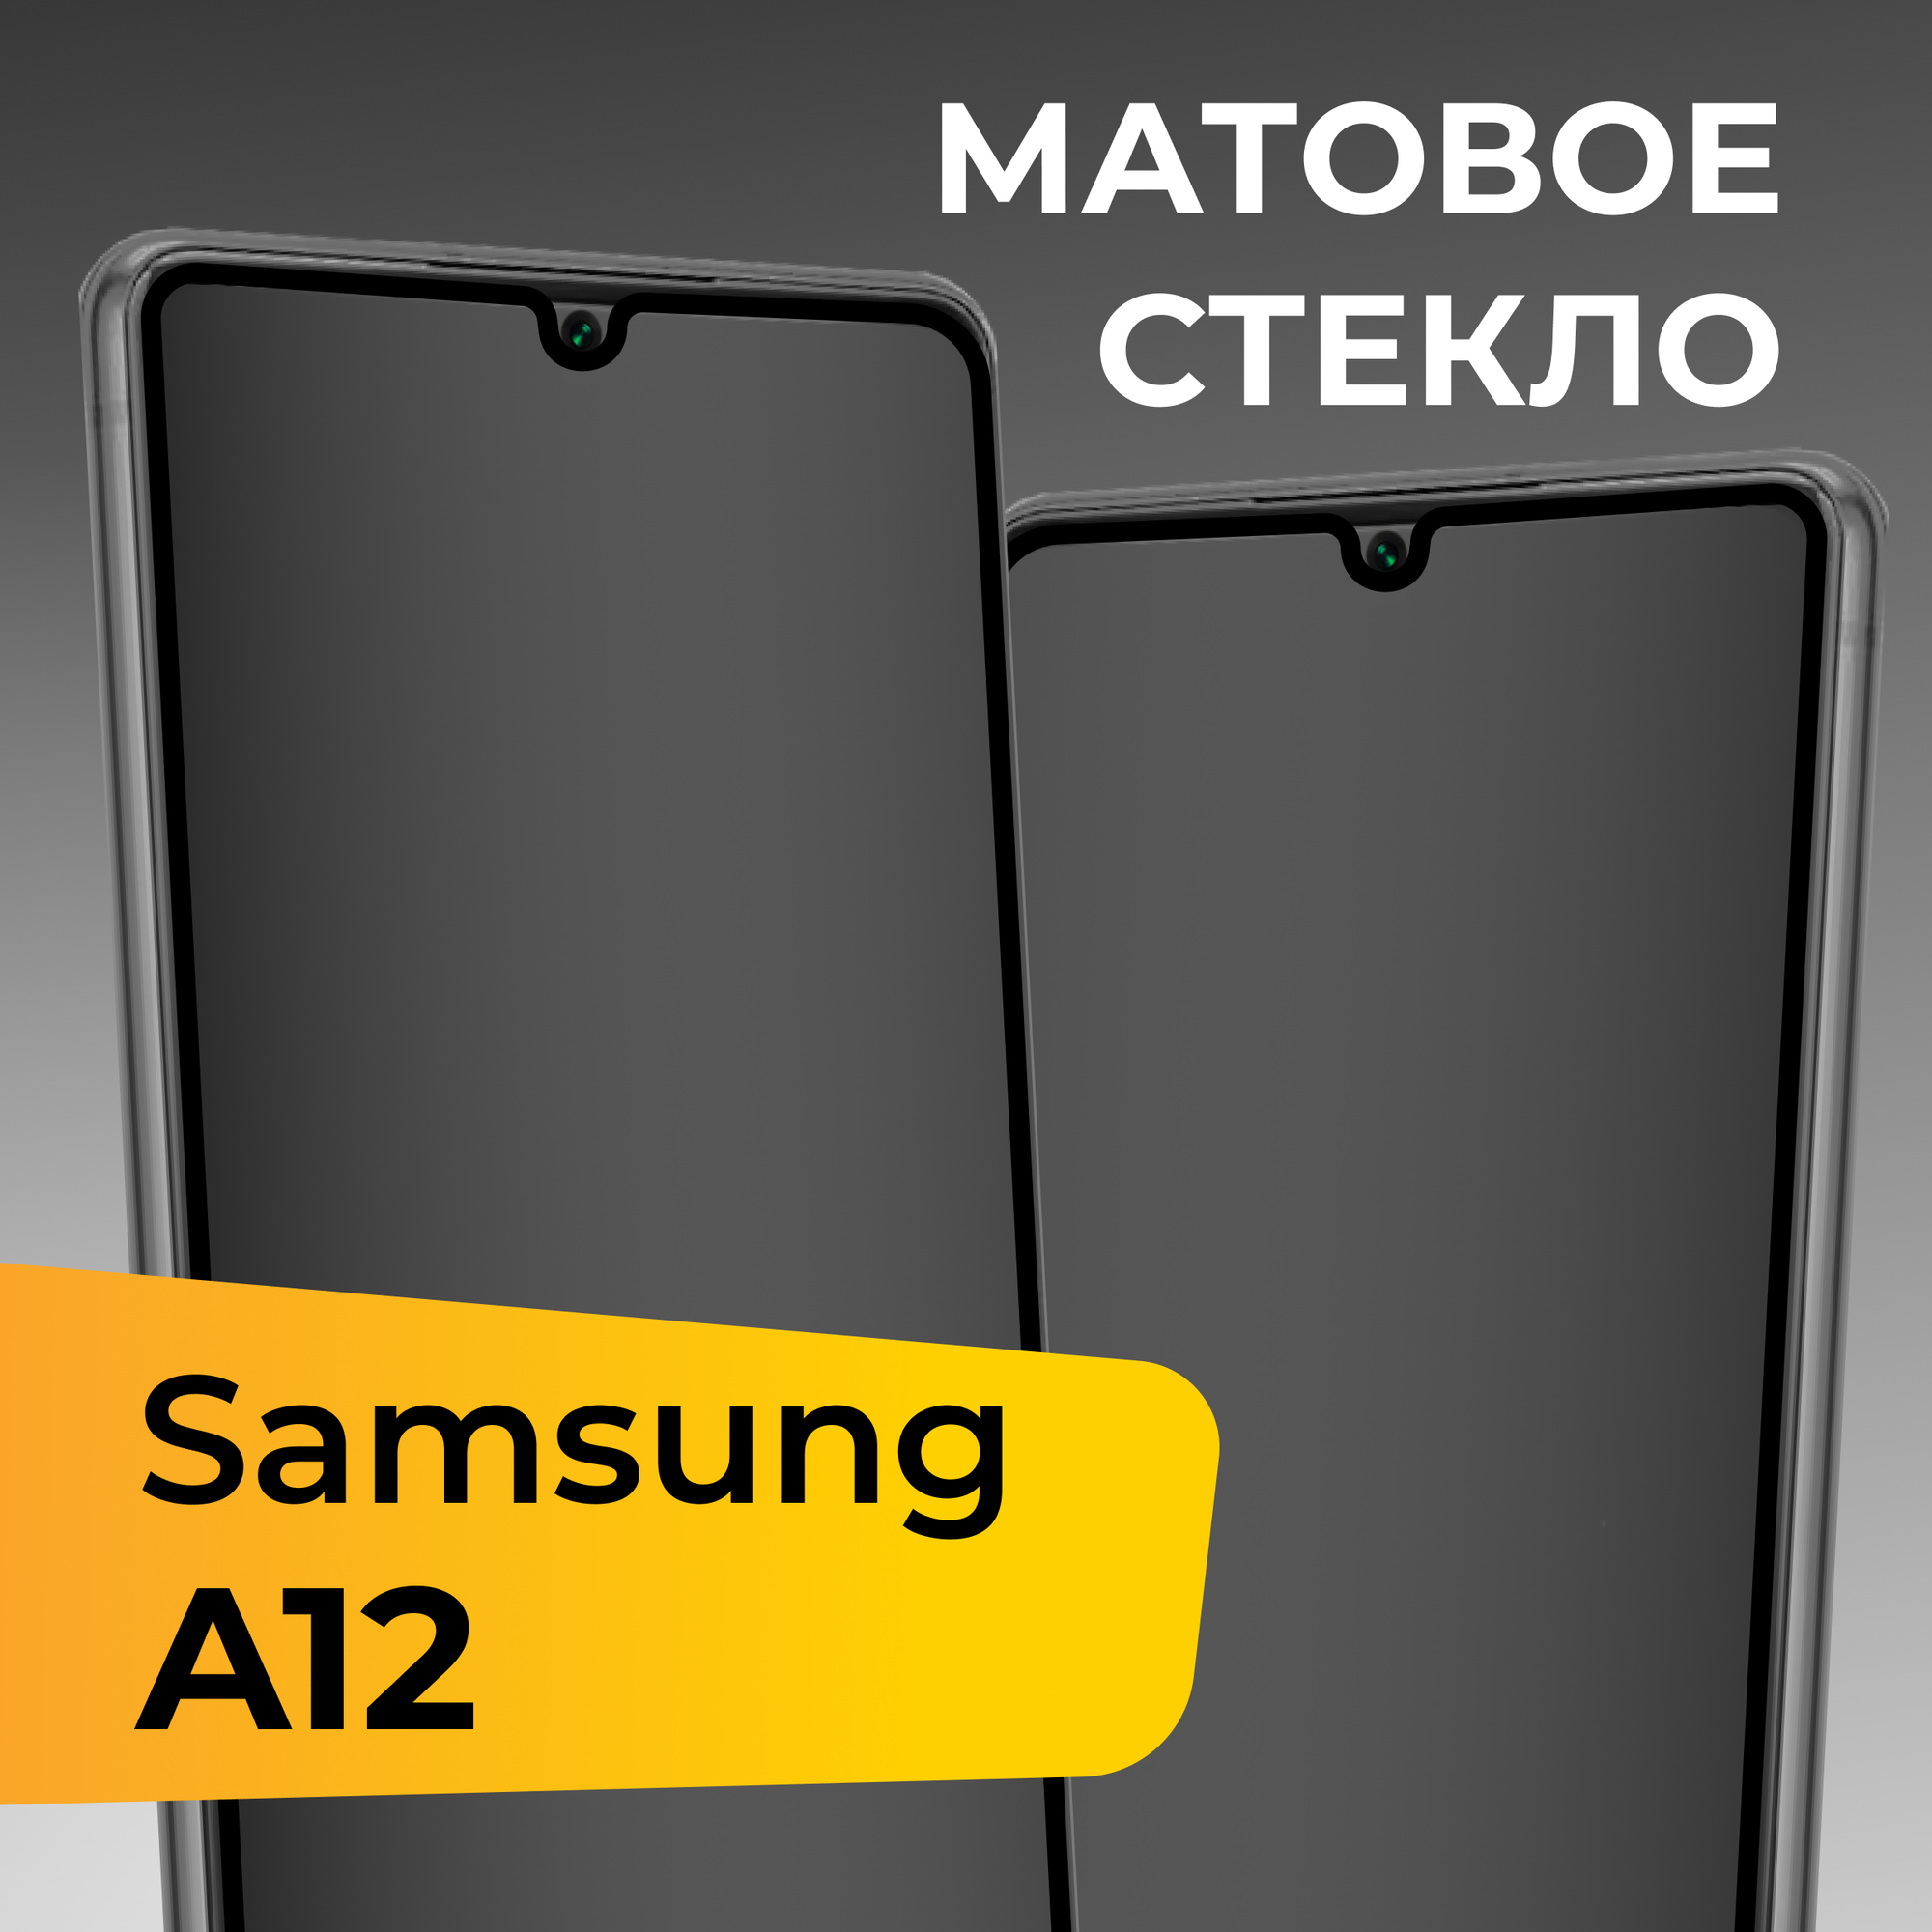 Матовое защитное стекло для телефона Samsung Galaxy A12 / Противоударное закаленное стекло на весь экран для смартфона Самсунг Галакси А12